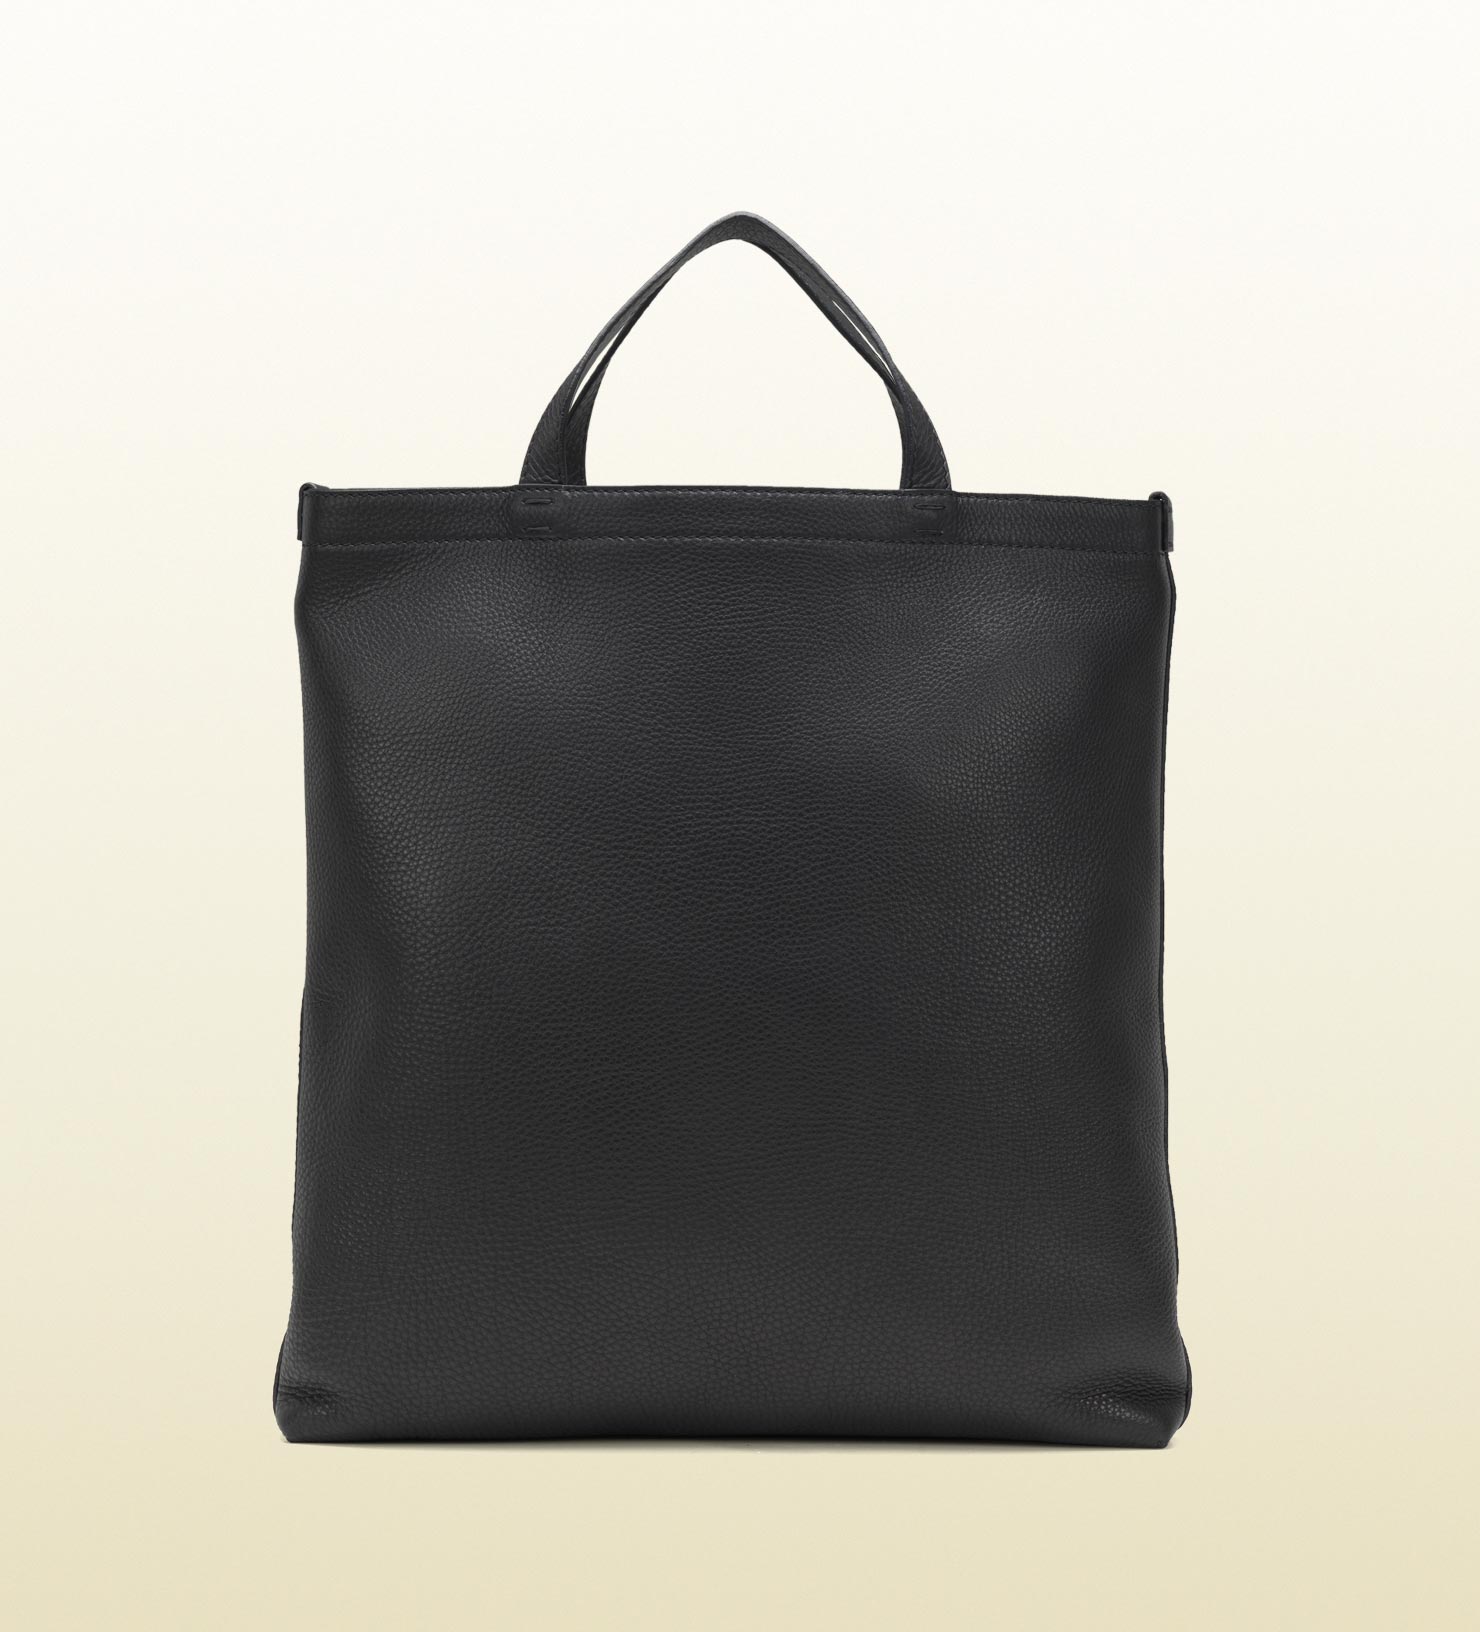 Lyst - Gucci Soft Tote Bag in Black